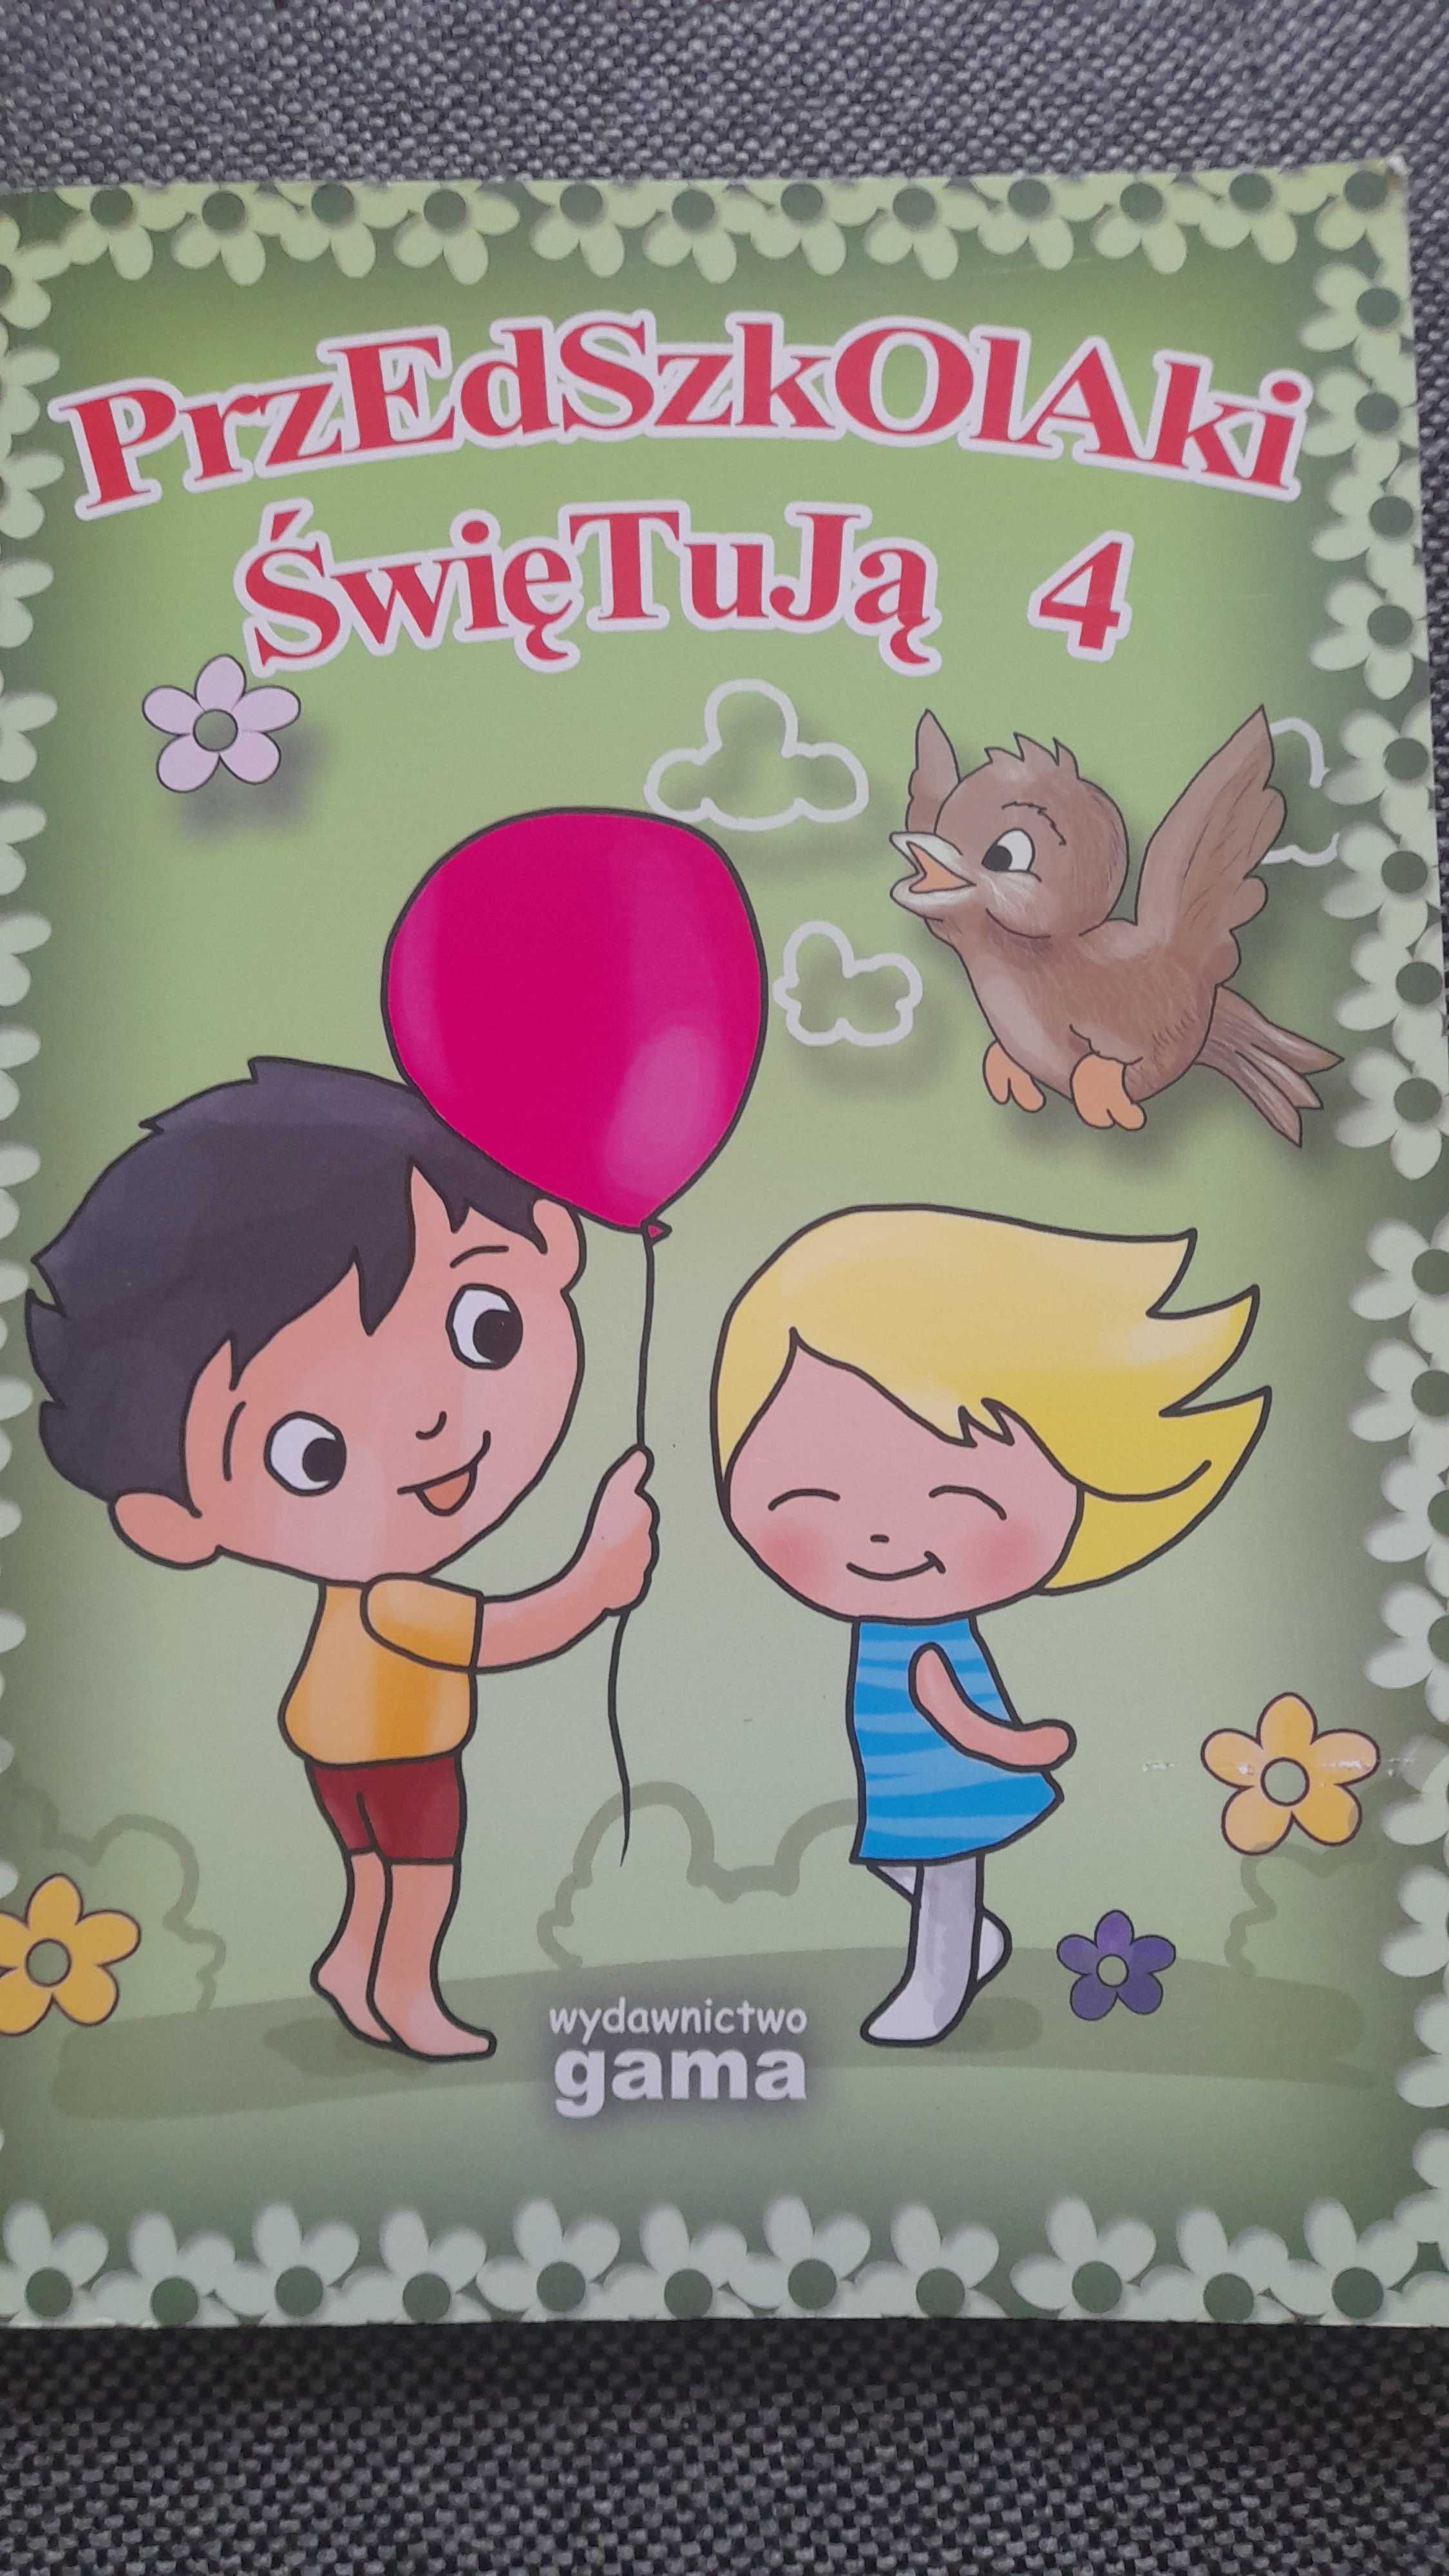 Nowa książka z płytą przedszkolaki świętują 4